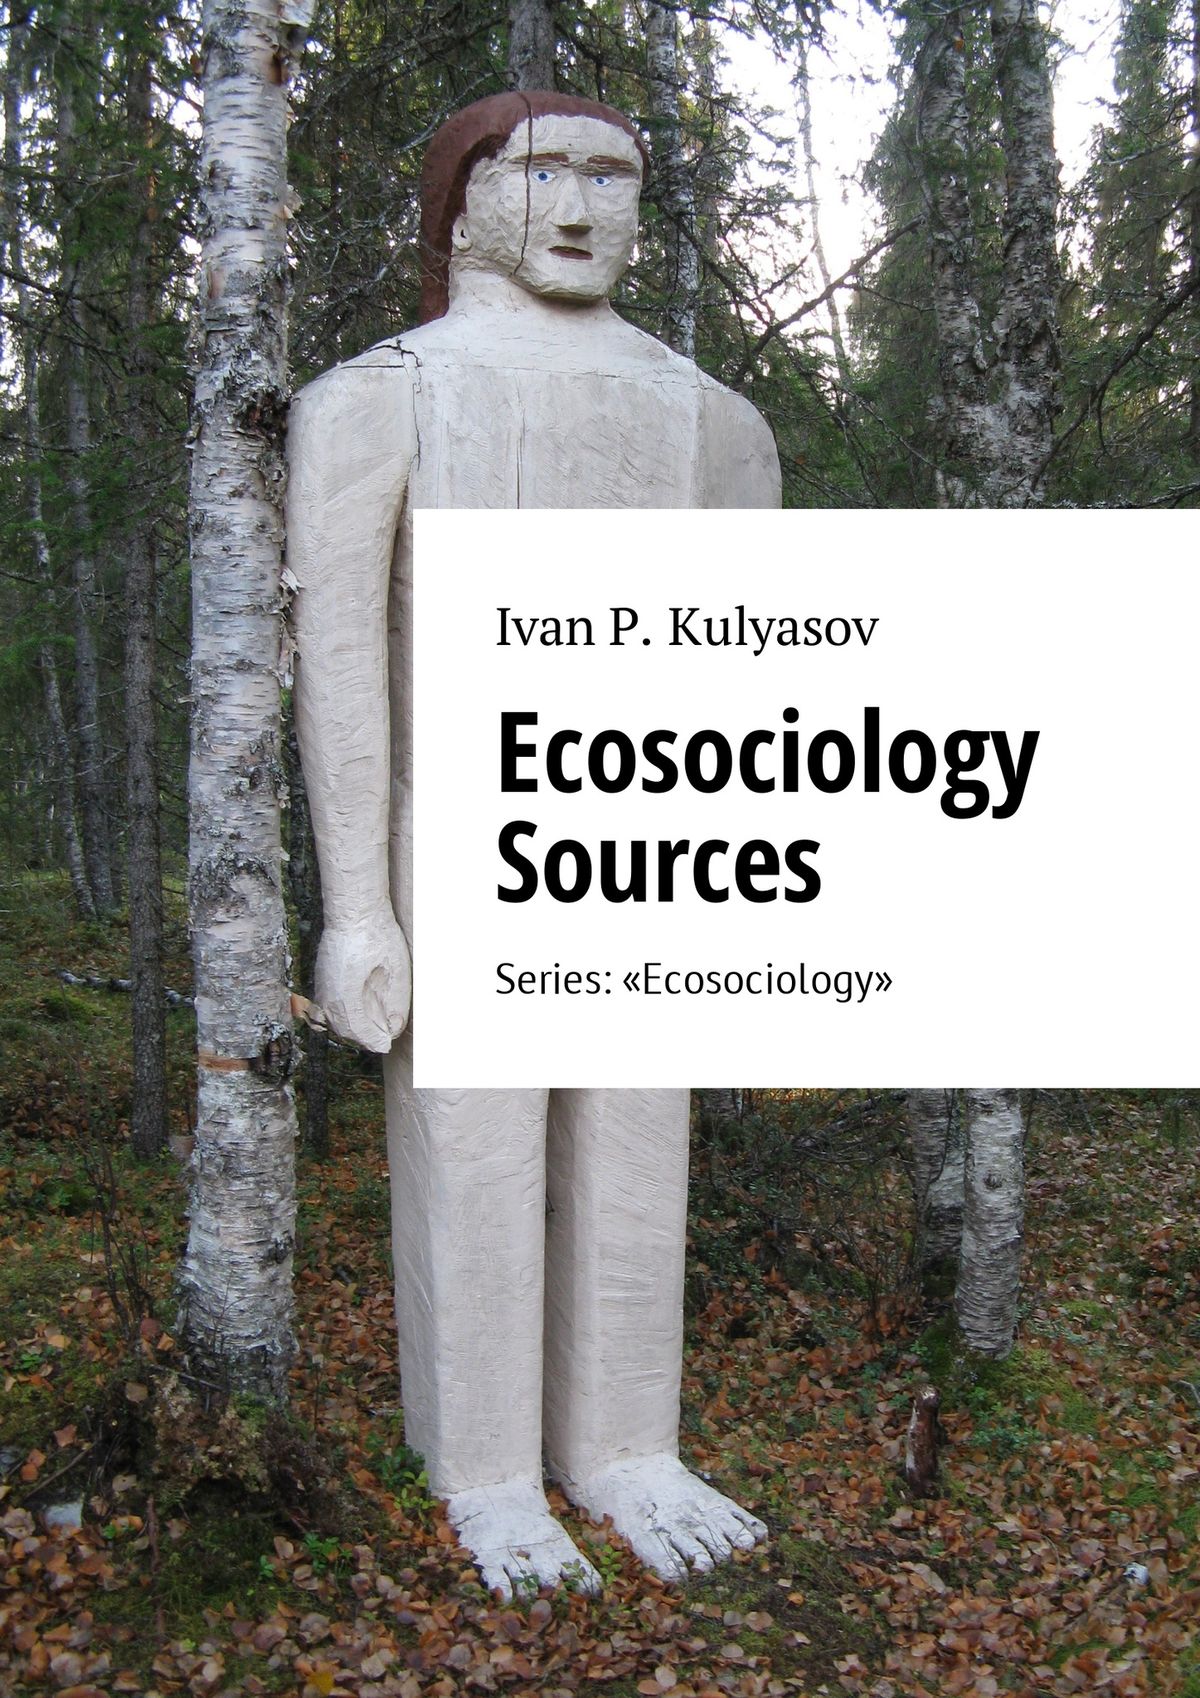 Книга Ecosociology Sources. Series: «Ecosociology» из серии , созданная I. Kulyasov, может относится к жанру Прочая образовательная литература. Стоимость книги Ecosociology Sources. Series: «Ecosociology»  с идентификатором 28062030 составляет 480.00 руб.